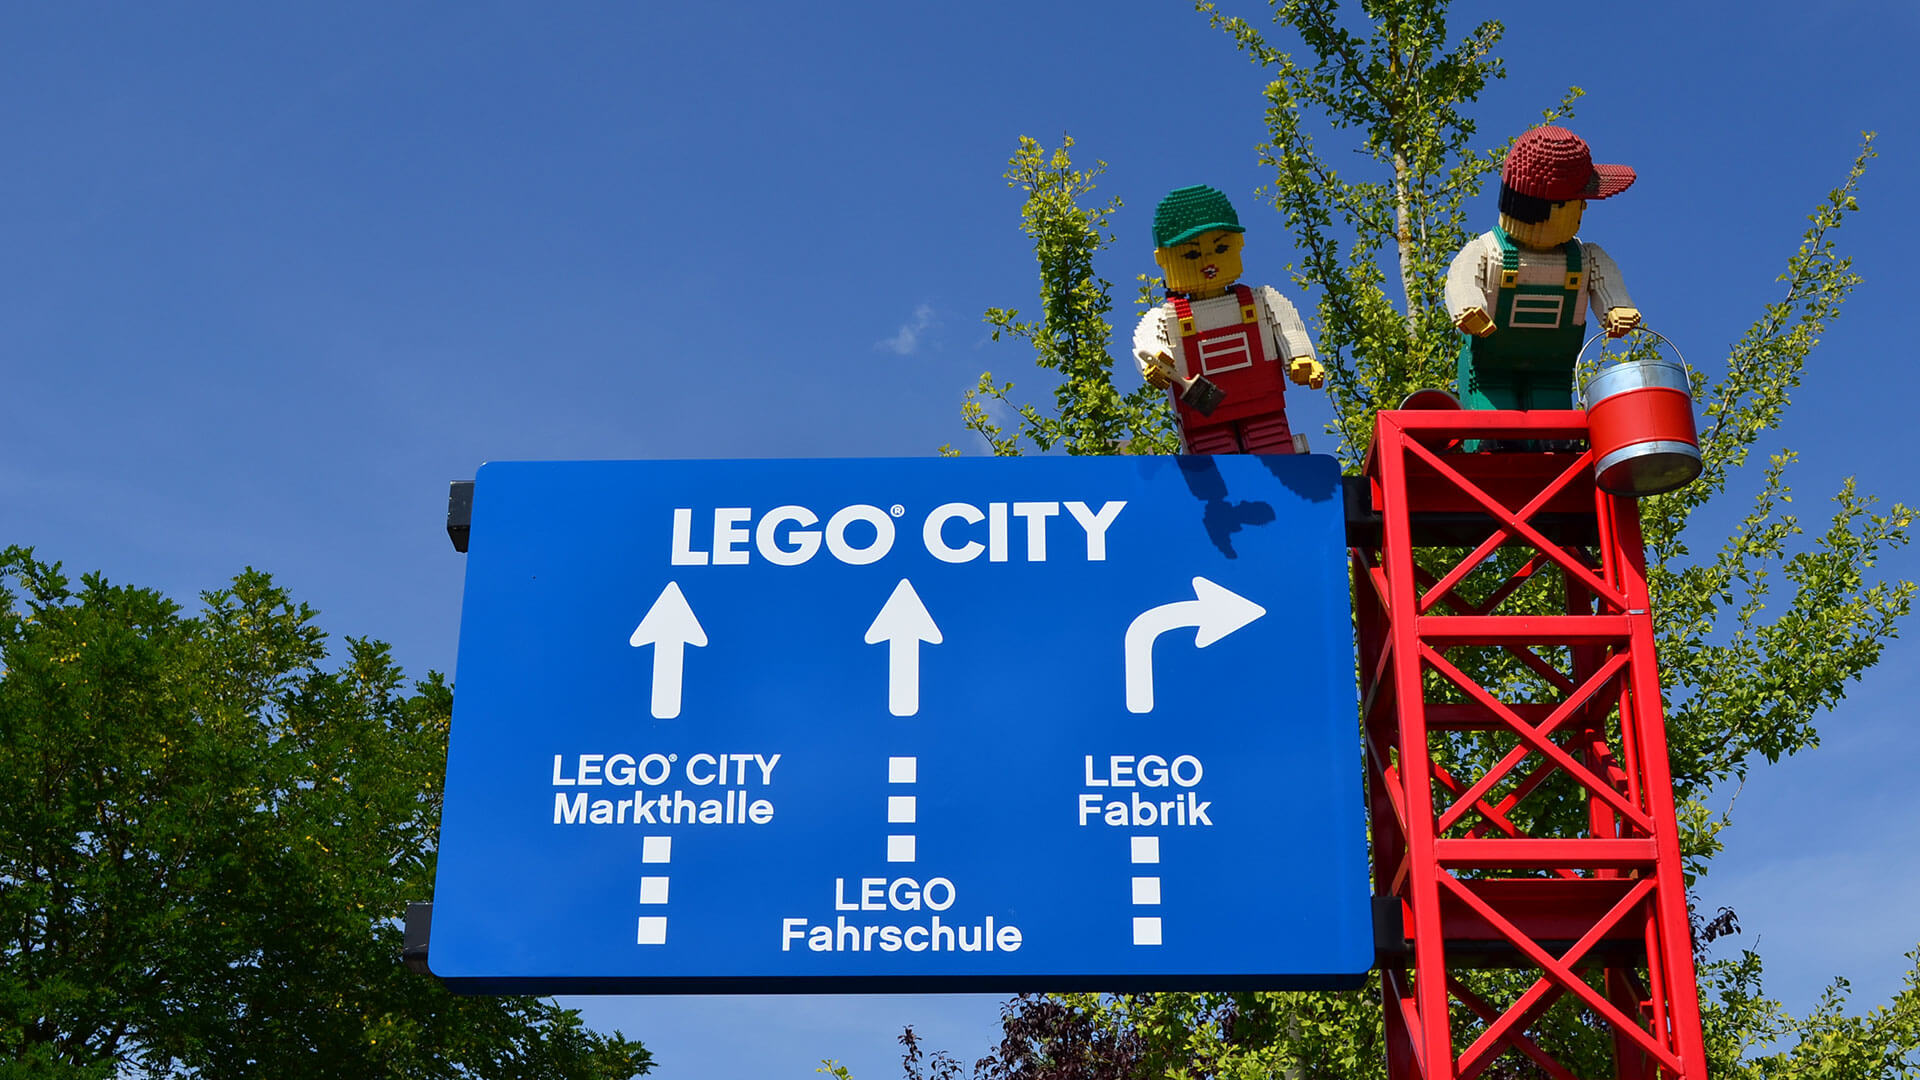 LEGOLAND Themed World LEGO City